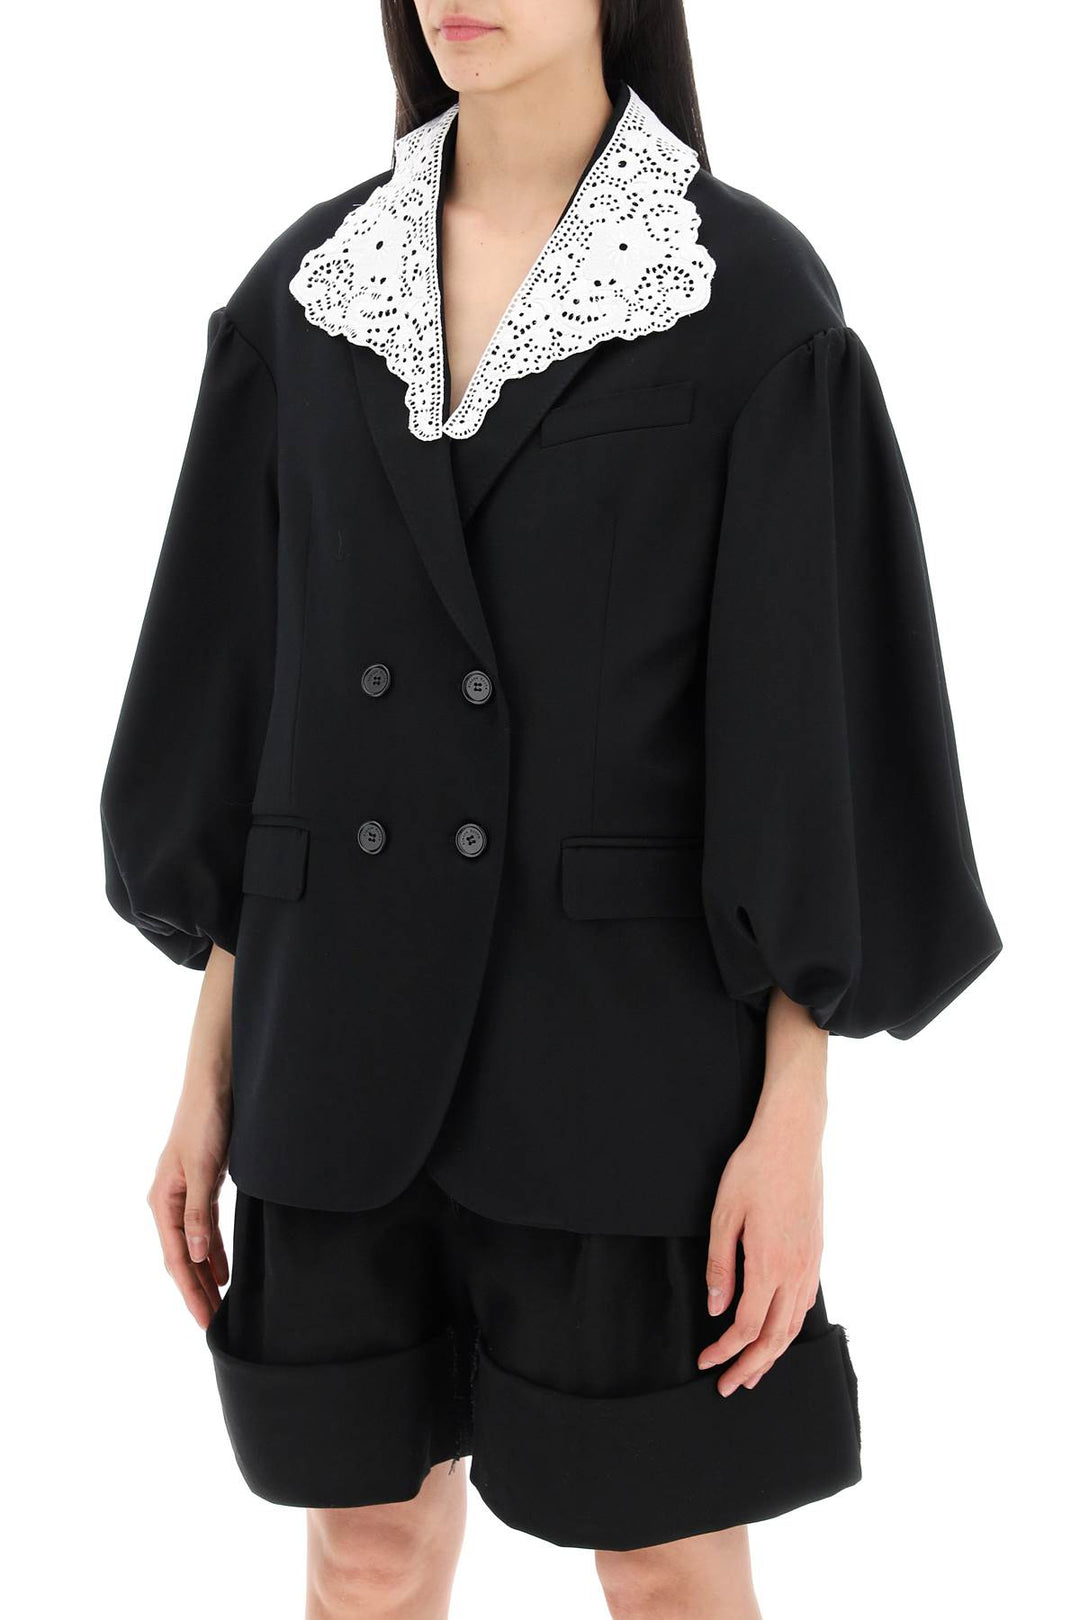 Simone Rocha Oversized Blazer With Lace   Black